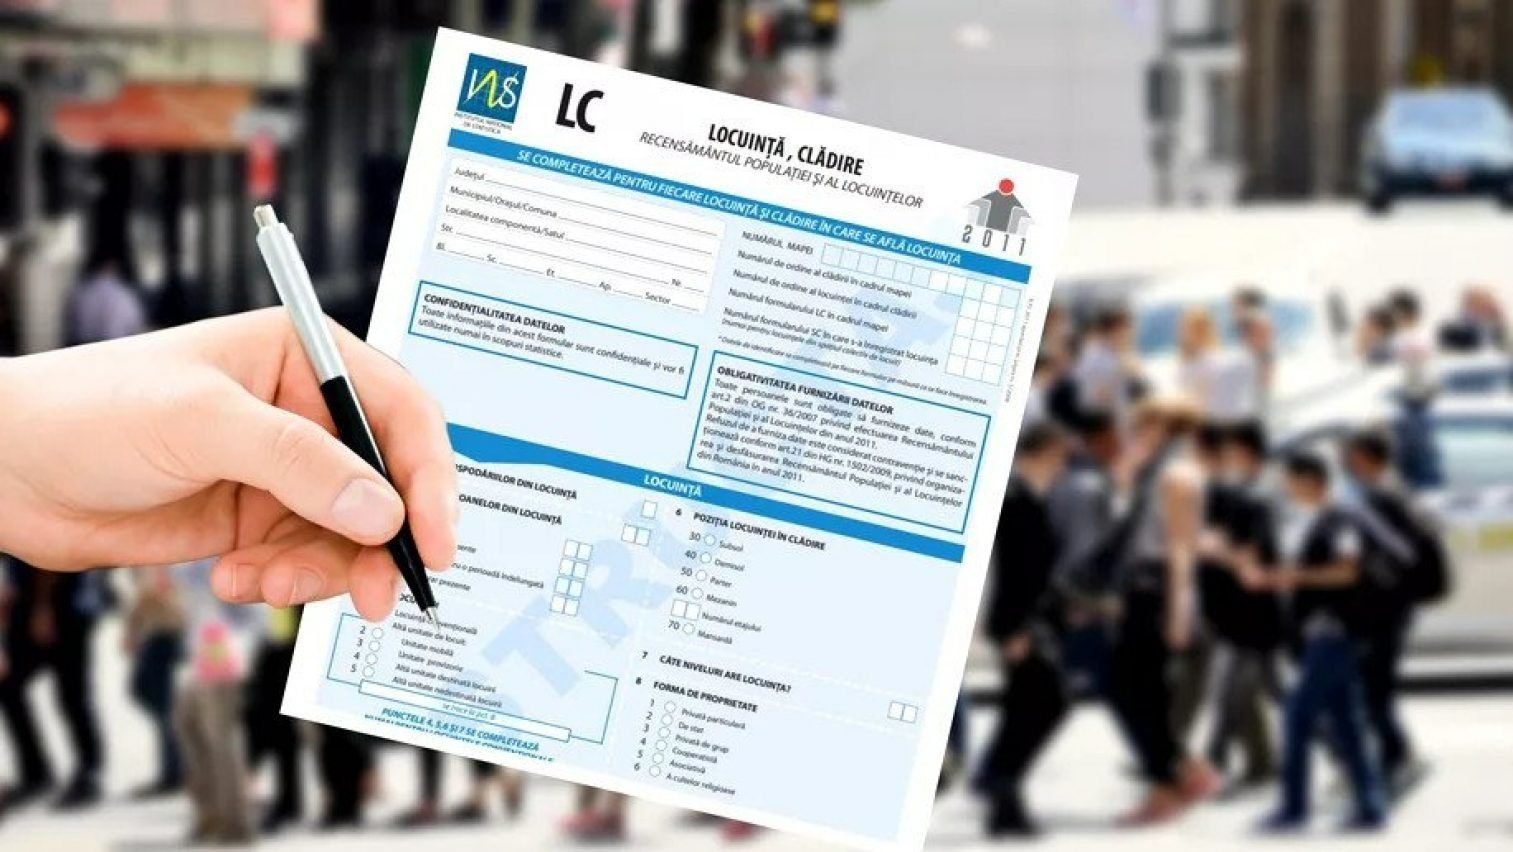 Recensământul Populaţiei şi Locuinţelor a fost din nou prelungit, până la 31 iulie, în localităţile în care recenzarea nu s-a încheiat